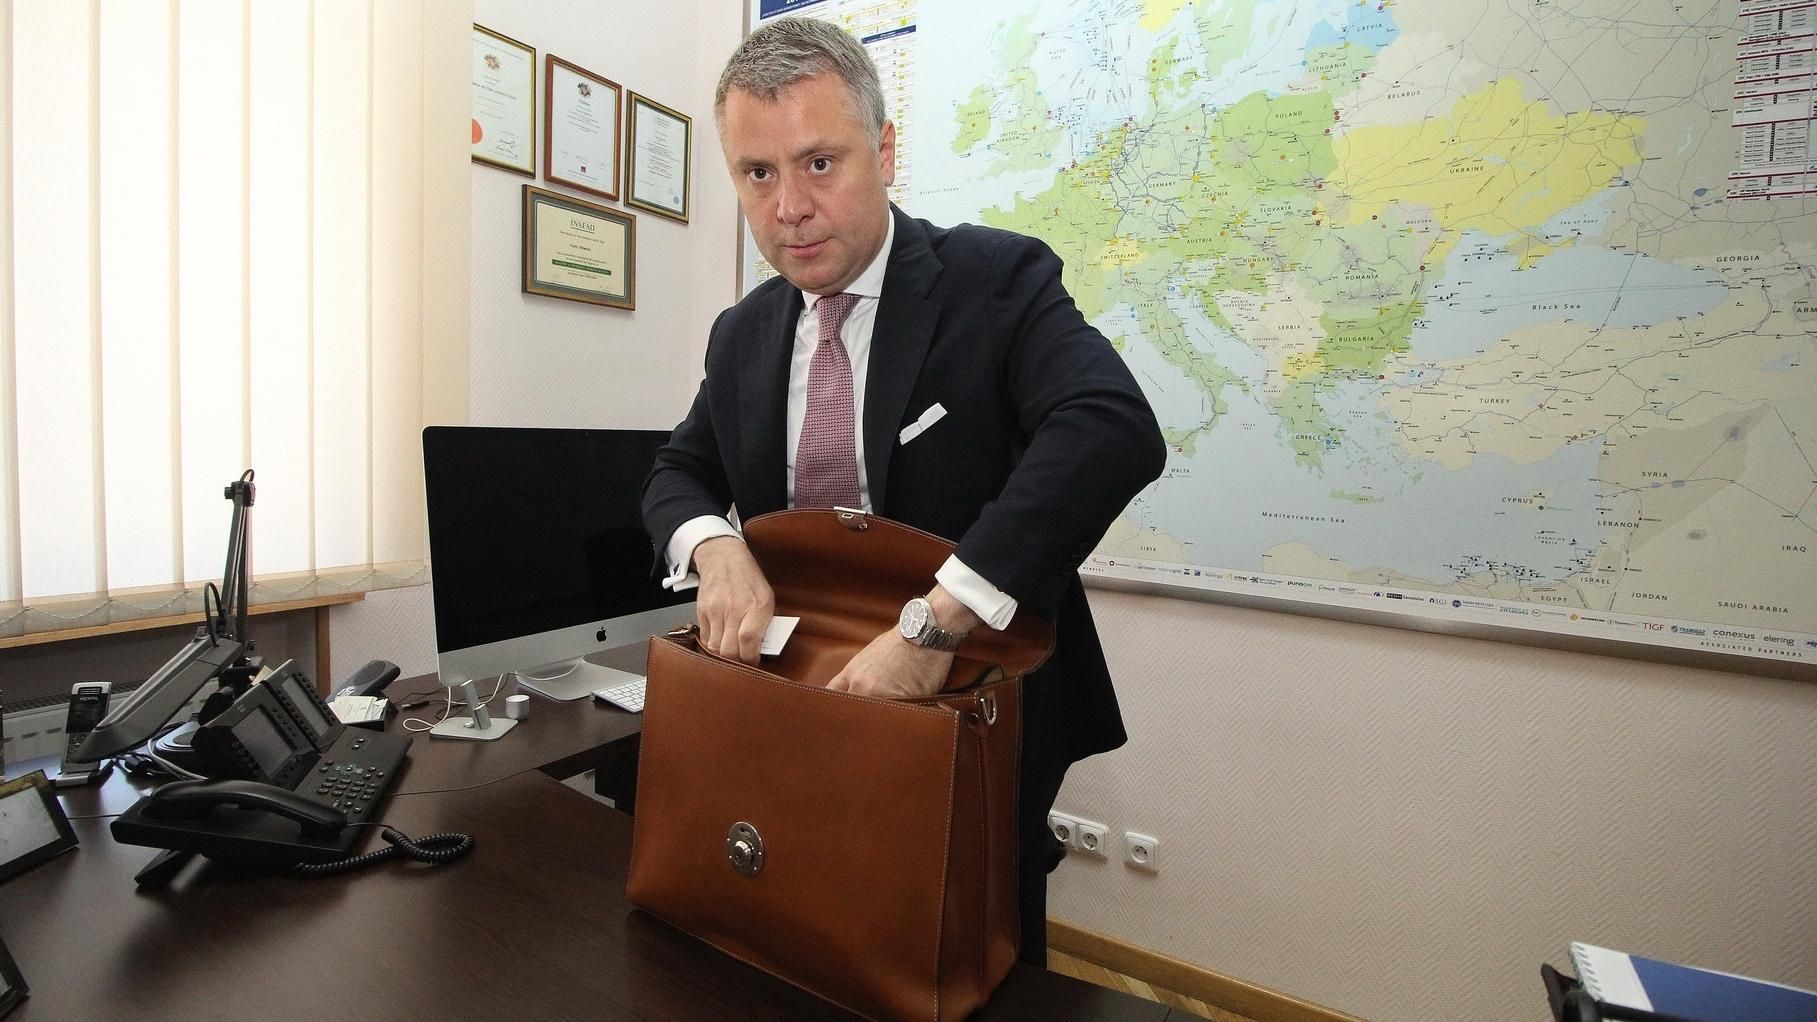 Претендует ли Витренко на должность премьер-министра: комментарий директора "Нафтогаза"